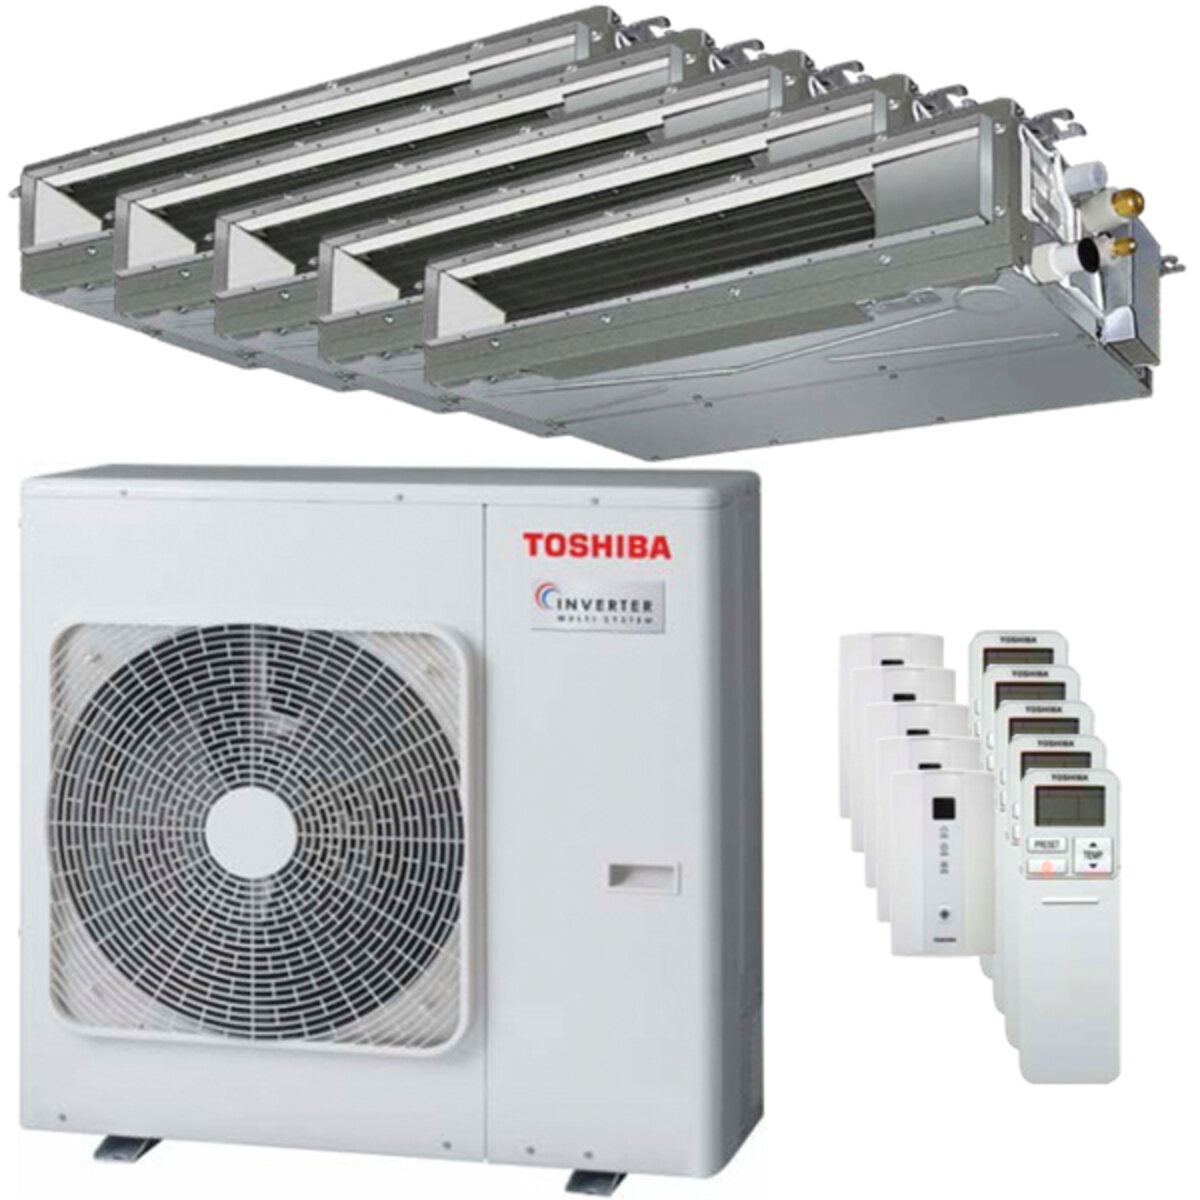 Toshiba Ductable Air Conditioner U2 Penta Split 7000 + 7000 + 7000 + 9000 + 9000 BTU Inverter A++ Außengerät 10,0 kW